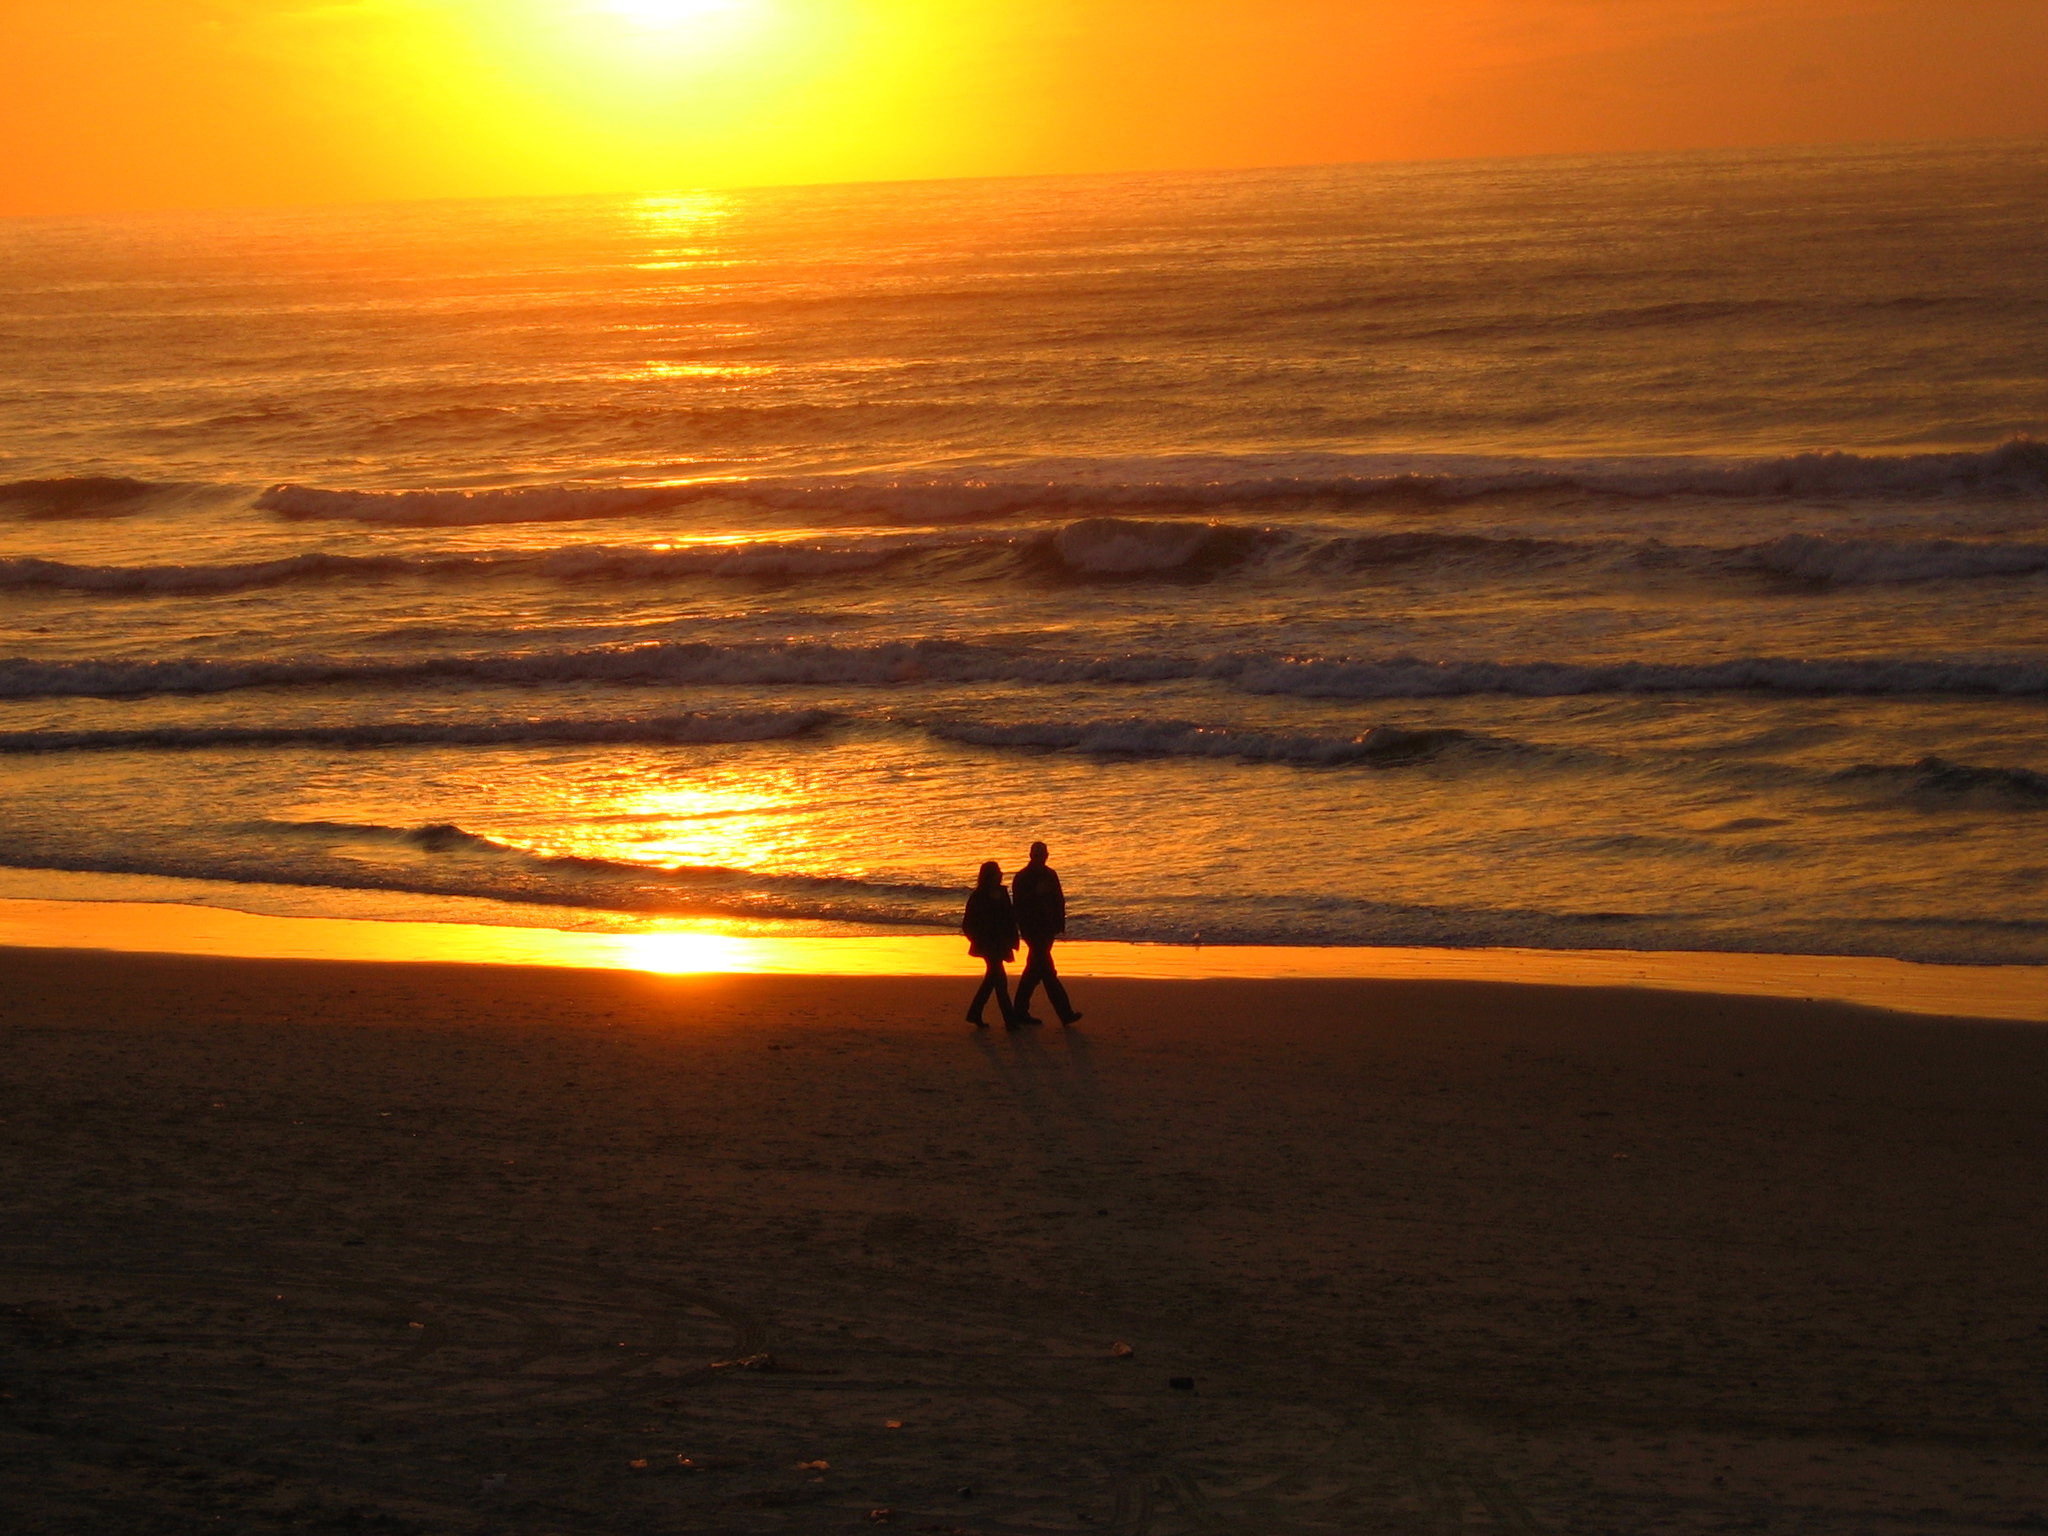 フリー画像 人物写真 一般ポートレイト 恋人 カップル シルエット 海の風景 夕日 夕焼け 夕暮れ 橙色 オレンジ ビーチ 海辺 画像素材なら 無料 フリー写真素材のフリーフォト